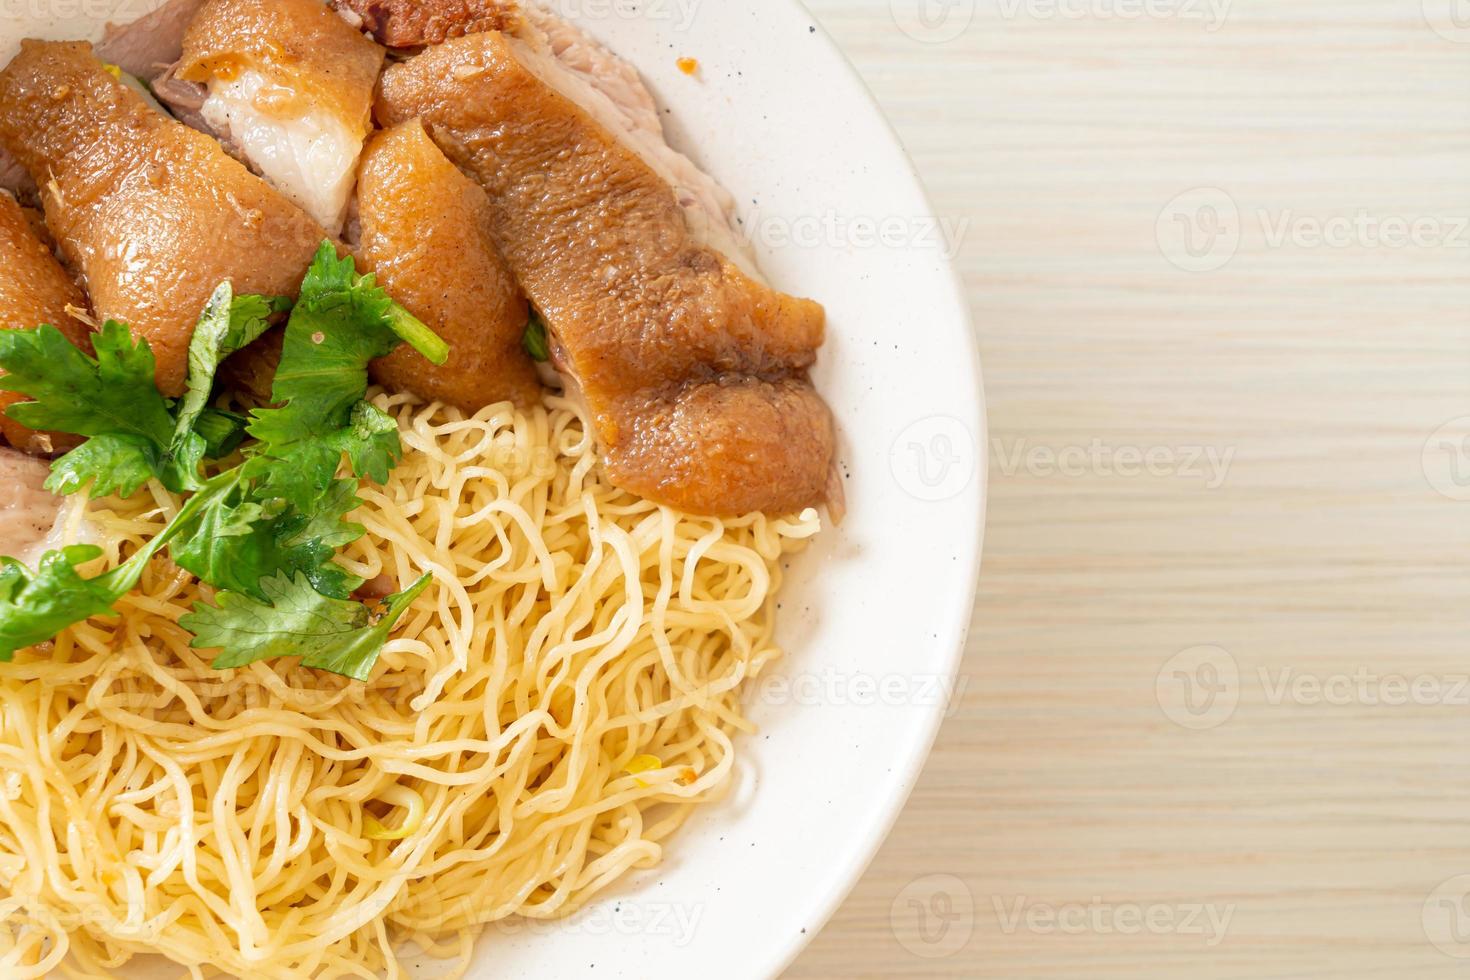 Tigela de macarrão com perna de porco estufada seca - comida asiática foto